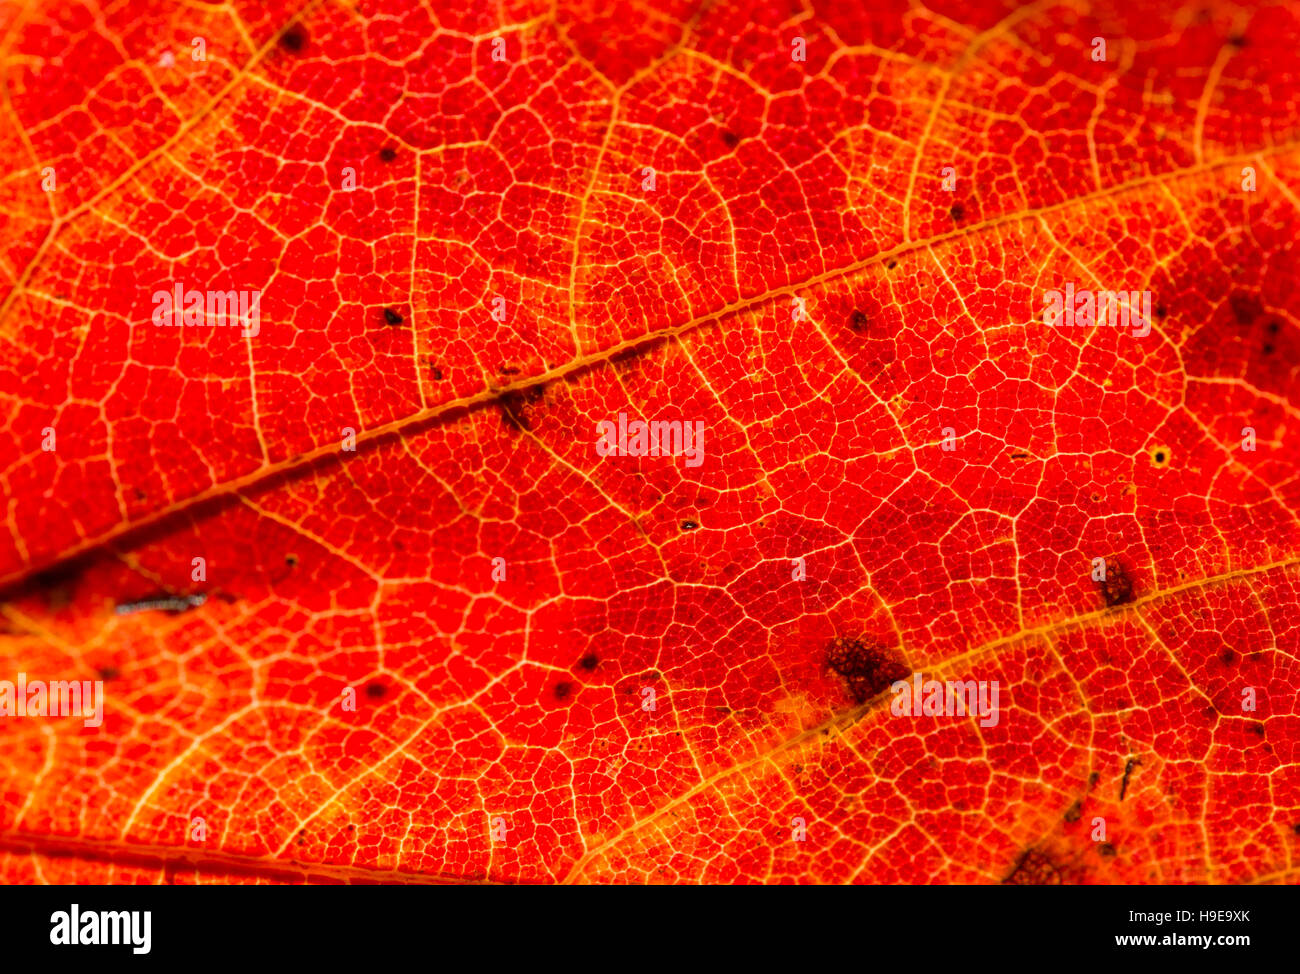 Schließen Sie detaillierte Makro von einem bunten Herbst Blatt zeigt die Textur, Venen und Muster. Stockfoto